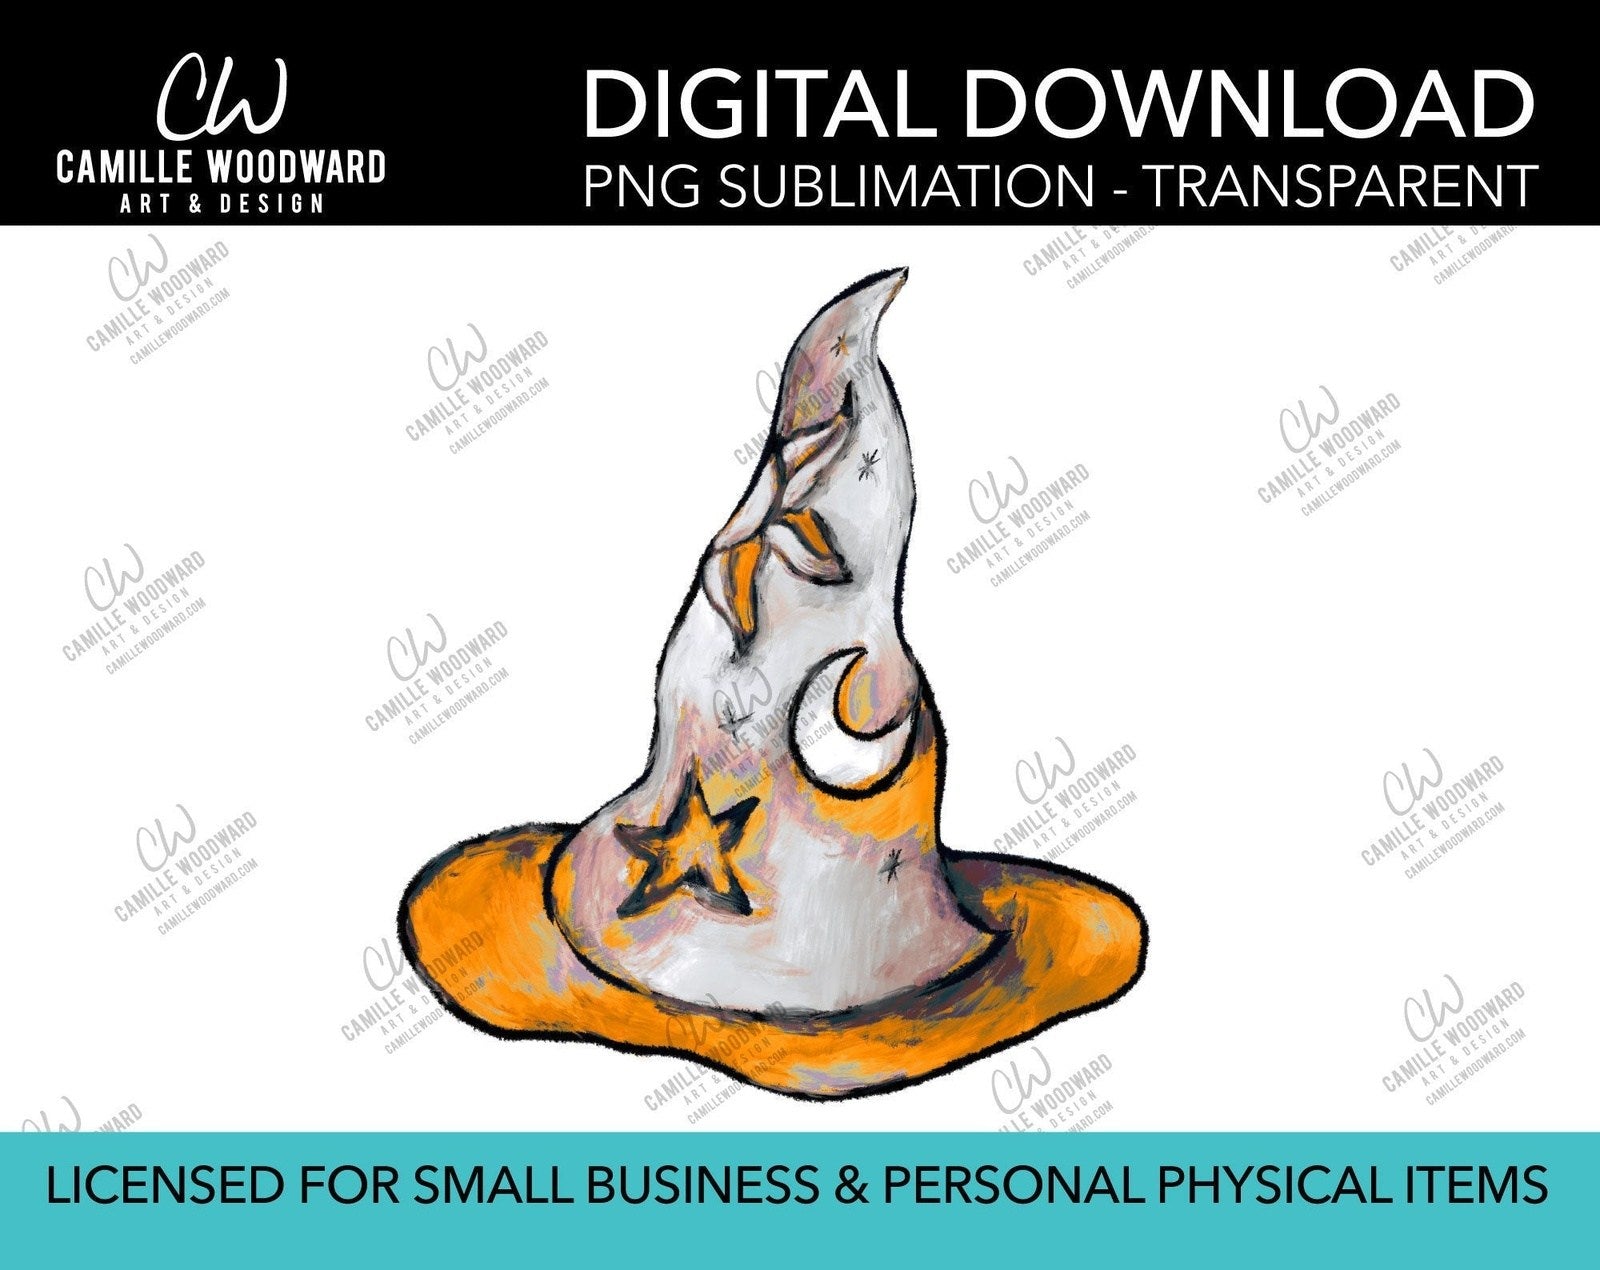 Magic Hat Celestial Orange, PNG - Sublimation Digital Download